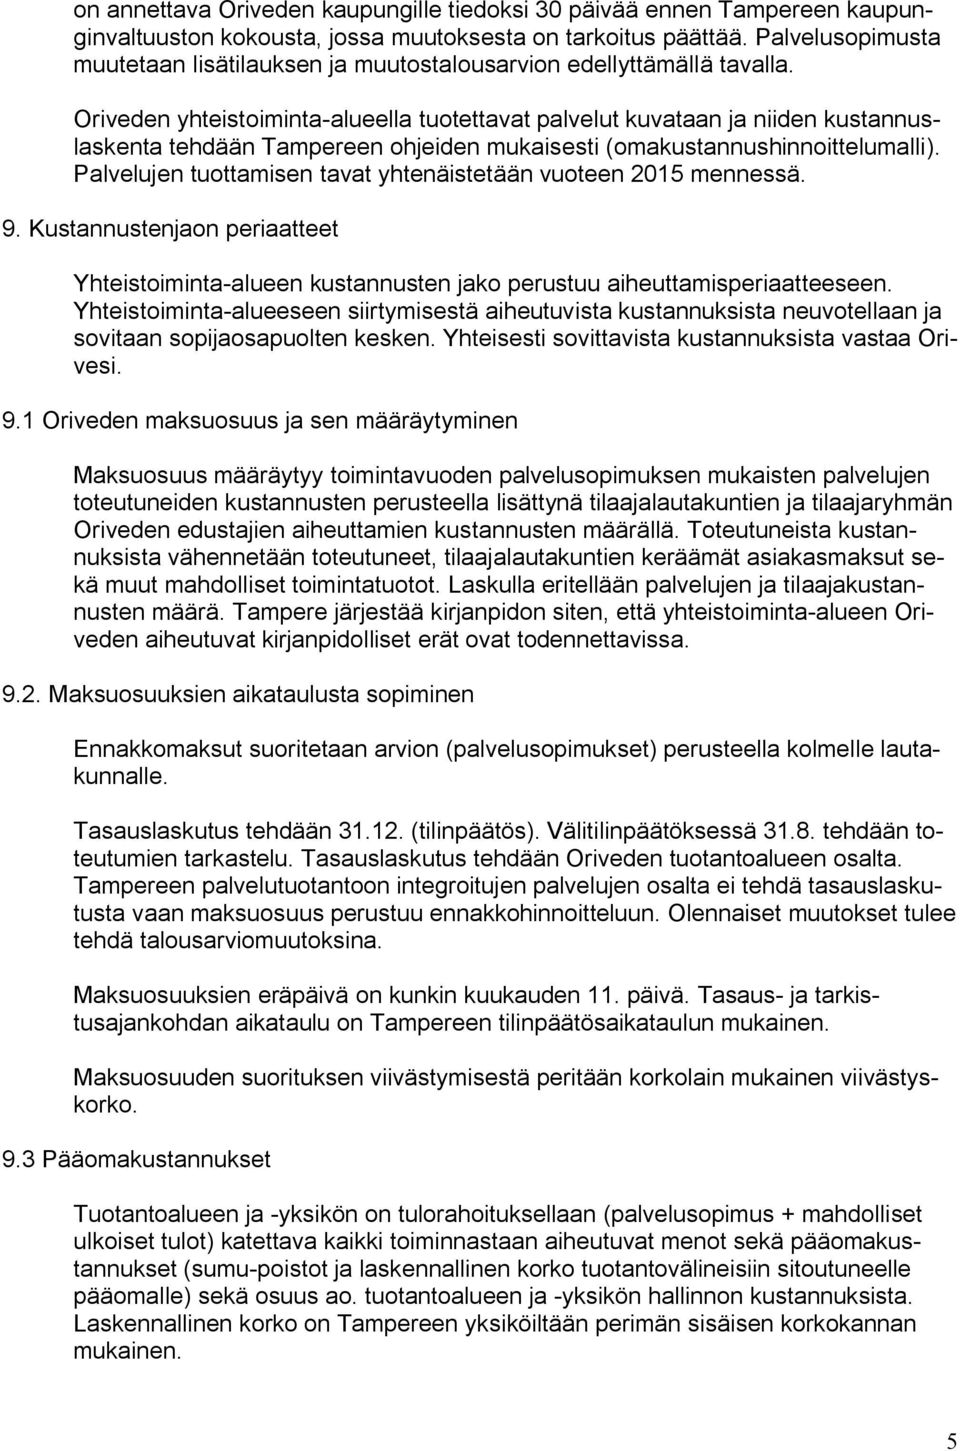 Oriveden yhteistoiminta alueella tuotettavat palvelut kuvataan ja niiden kustannuslaskenta tehdään Tampereen ohjeiden mukaisesti (omakustannushinnoittelumalli).